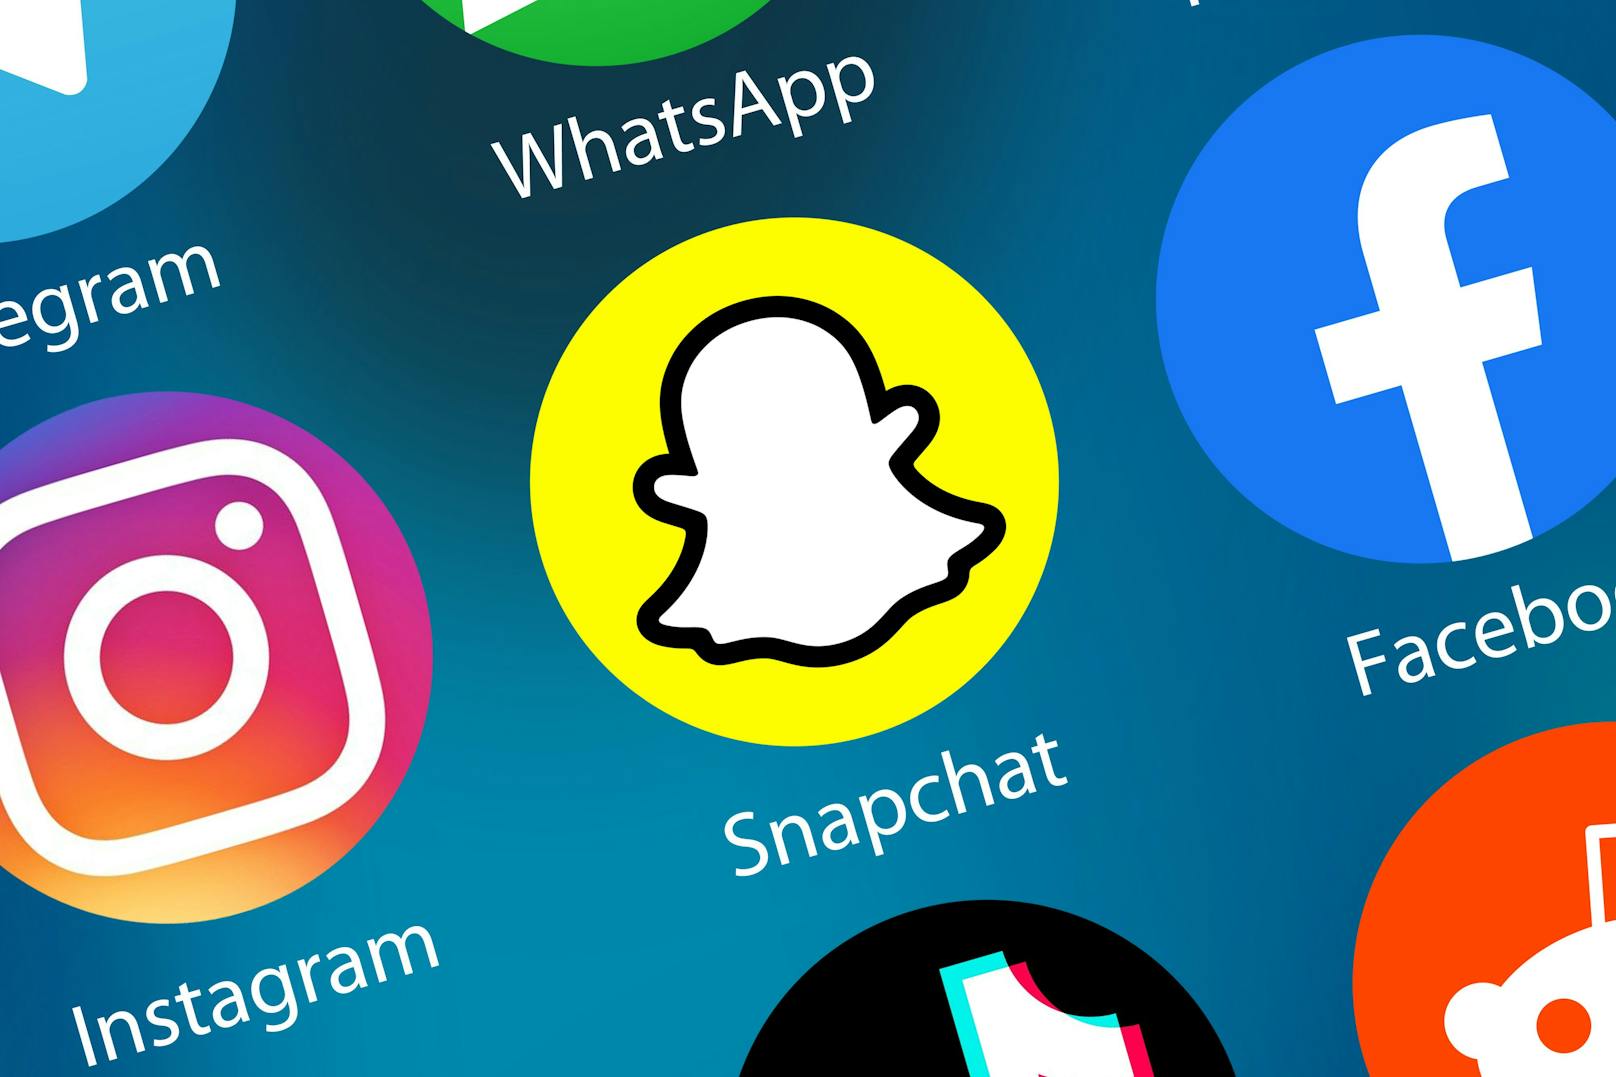 Snapchat-Zahlen beruhigen Anleger nach Facebook-Absturz